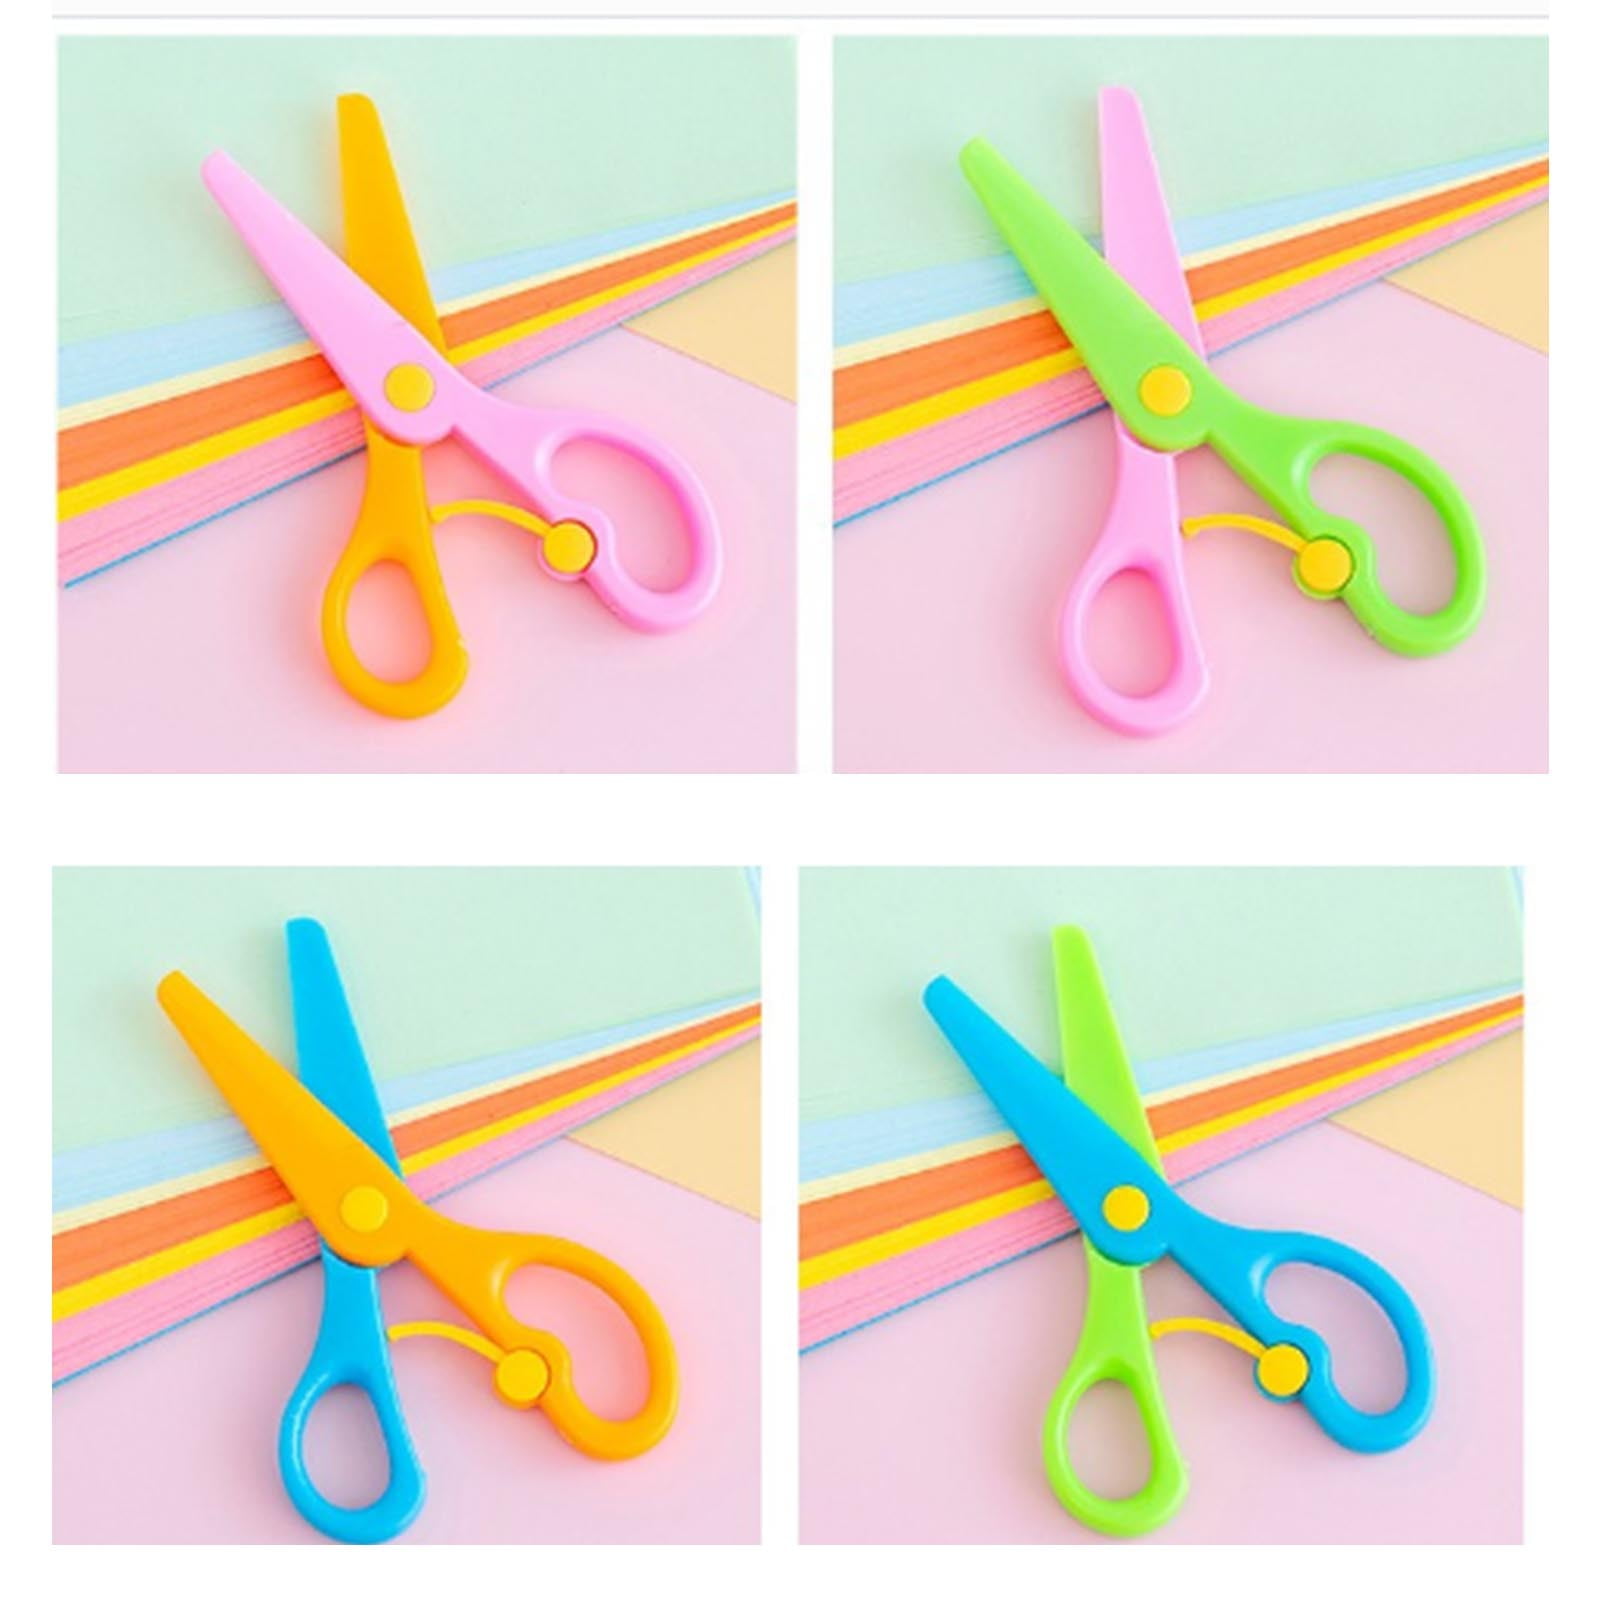 Preschool Training Scissors Plastic Playdough Scissors - Temu